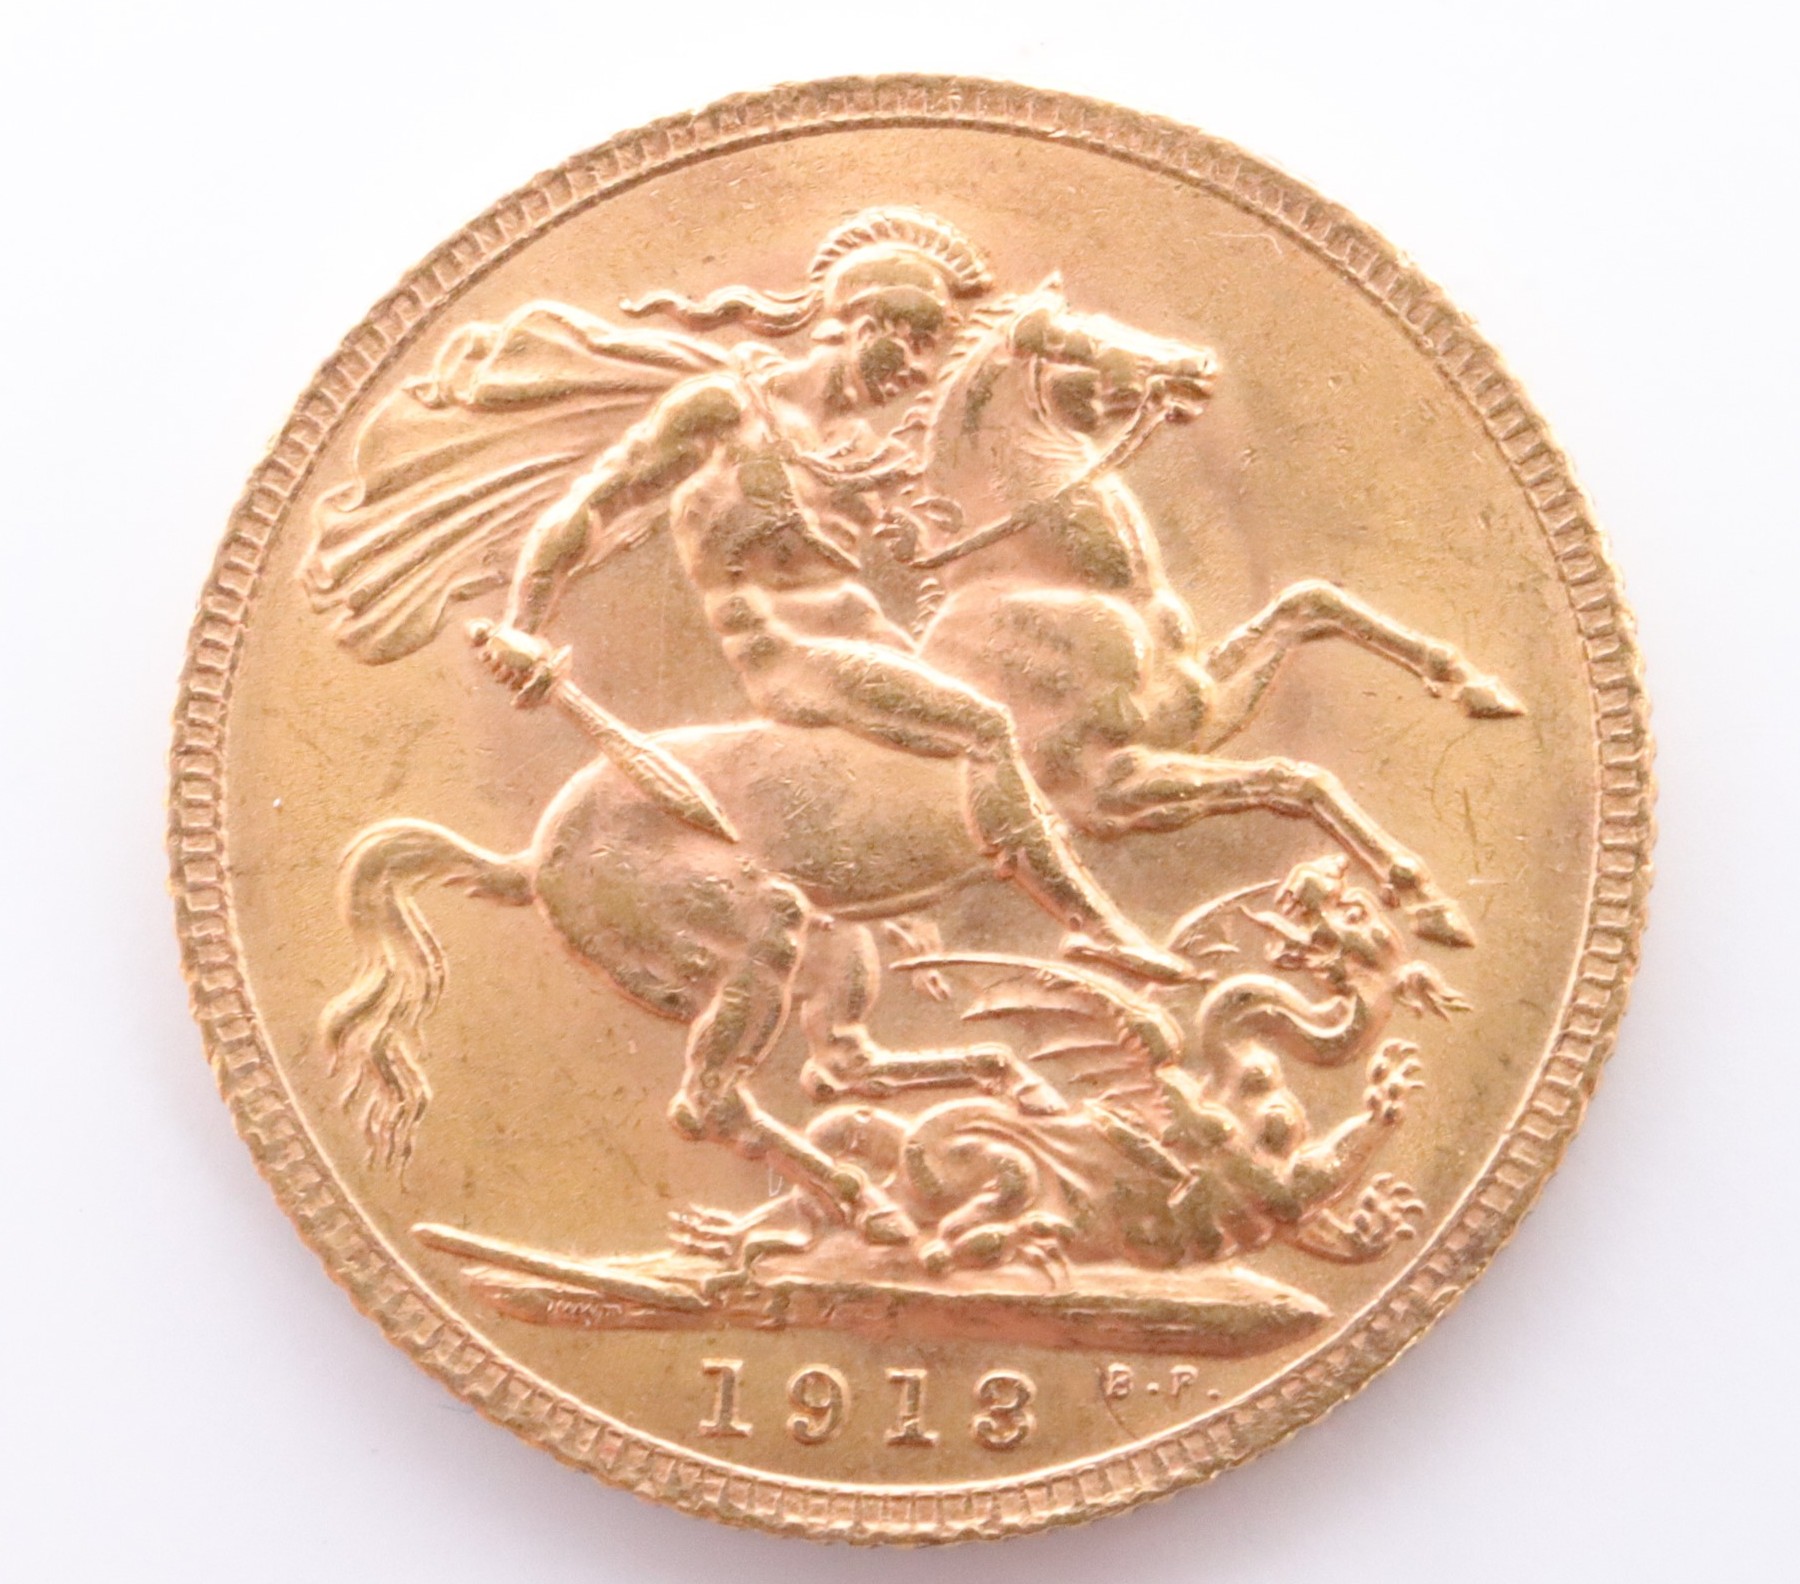 A 1913 gold Sovereign